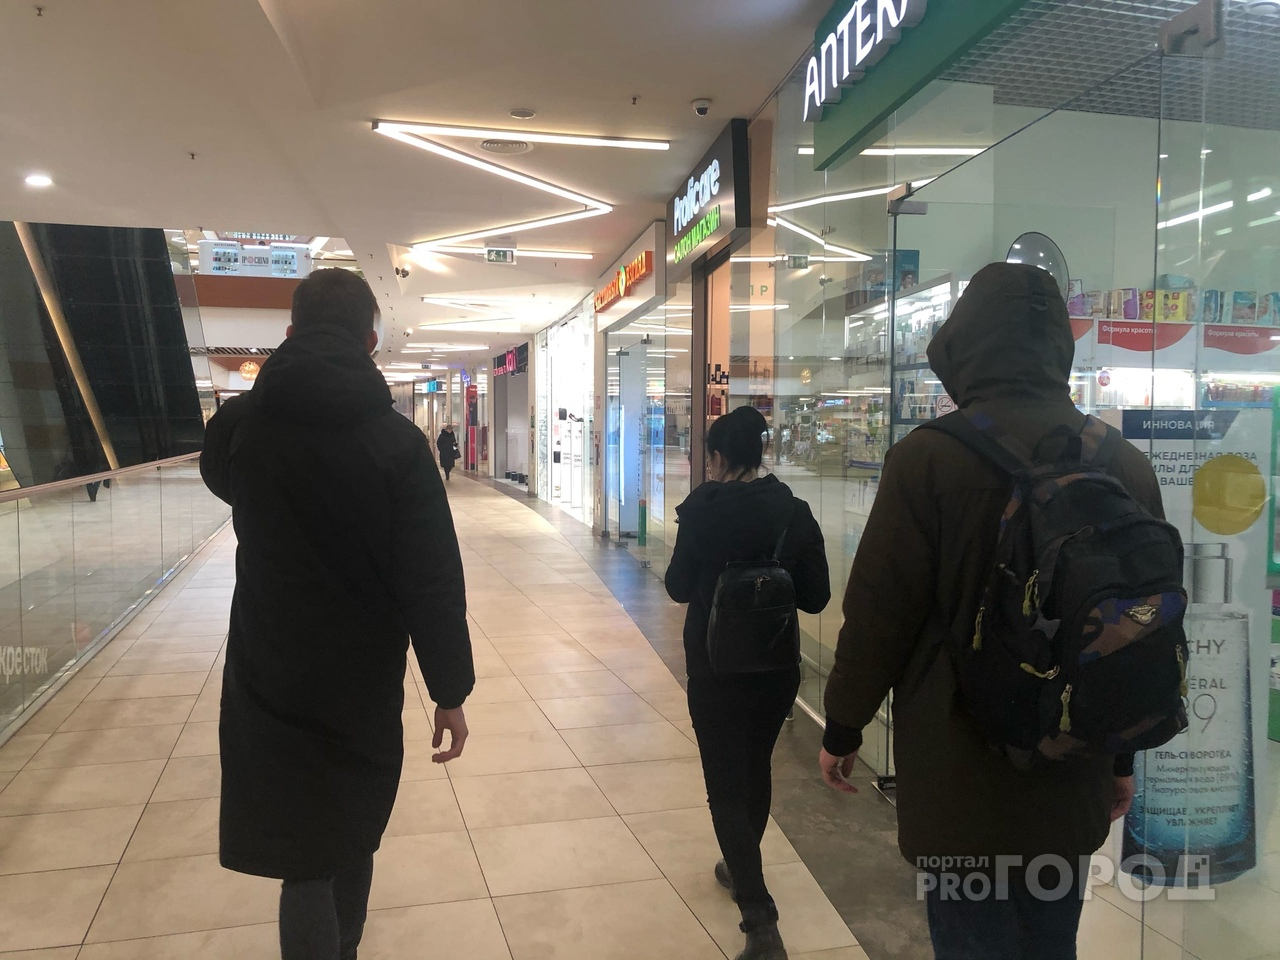 "Детей будут ловить в торговом центре": массовая рассылка в школьных чатах напугала родителей в Ярославле